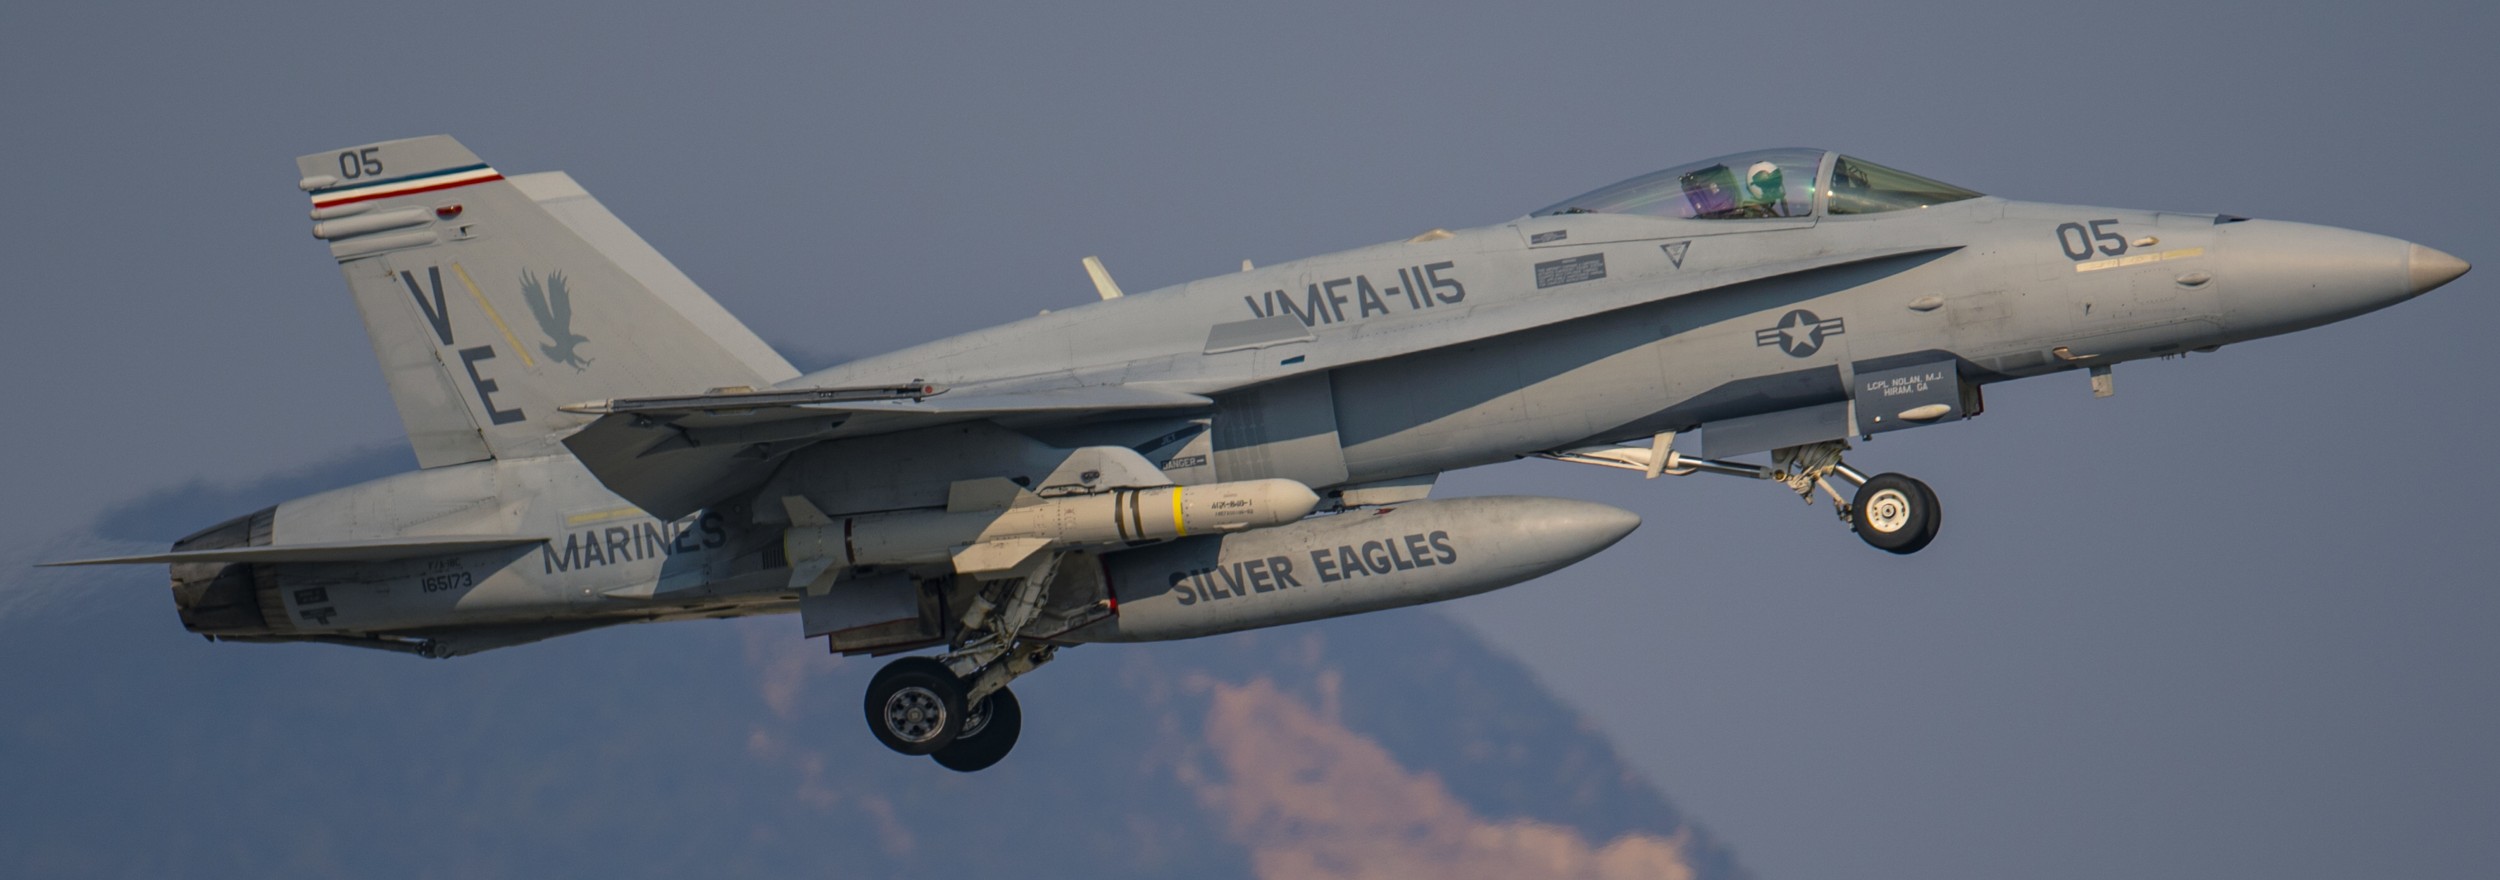 vmfa-115 silver eagles marine fighter attack squadron usmc f/a-18c hornet 190 mcas iwakuni agm-84 harpoon